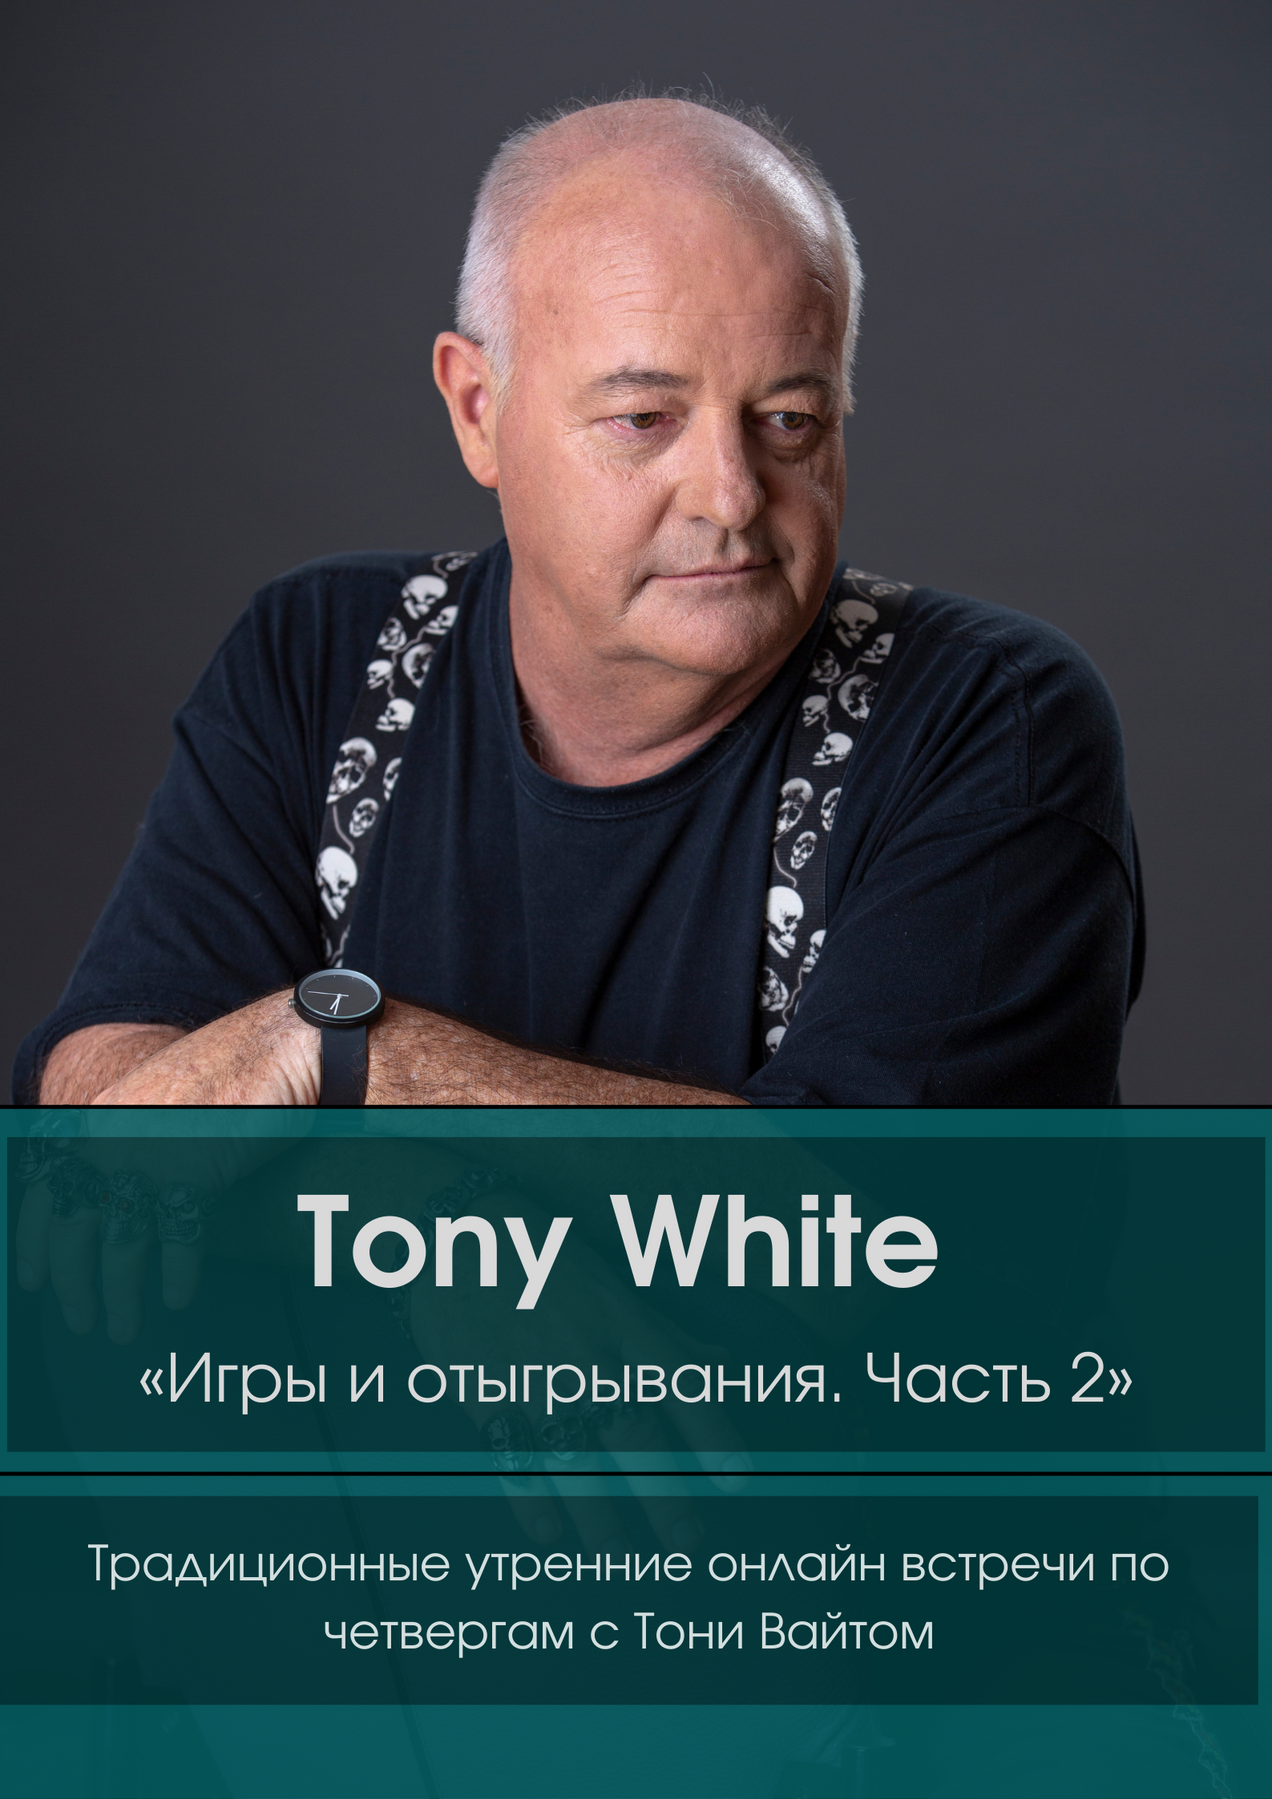 Tony White «Игры и отыгрывания Часть 2».